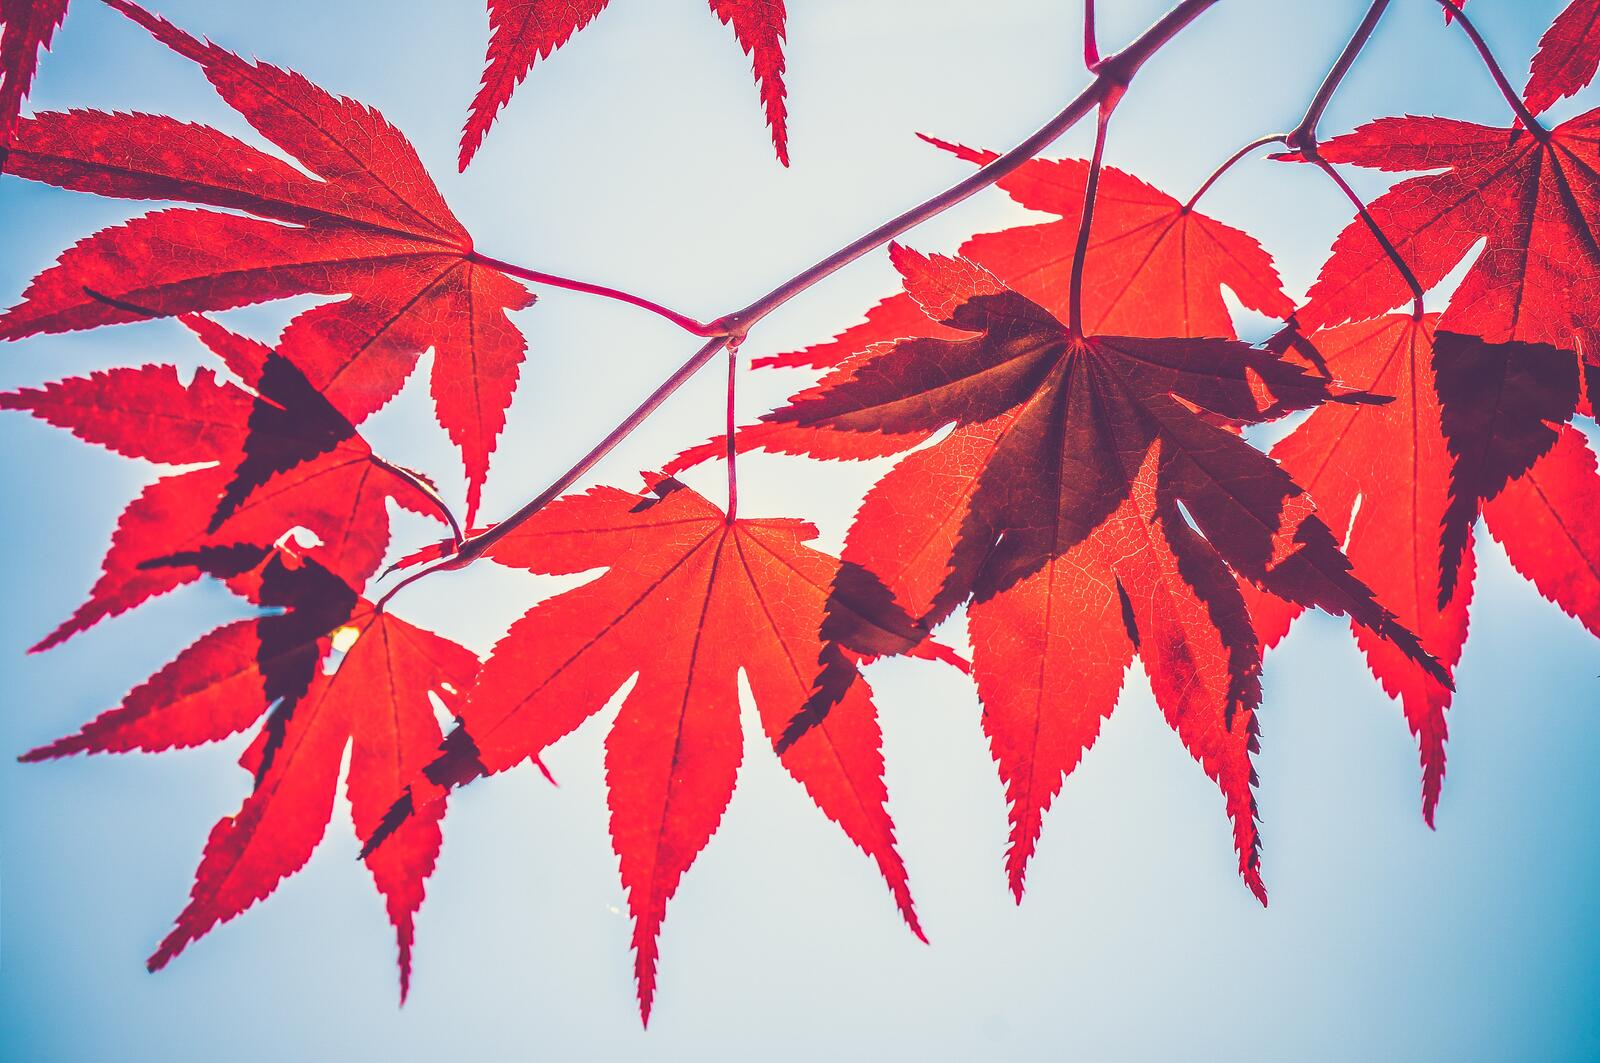 Бесплатное фото Веточка с красными листьями в солнечную погоду